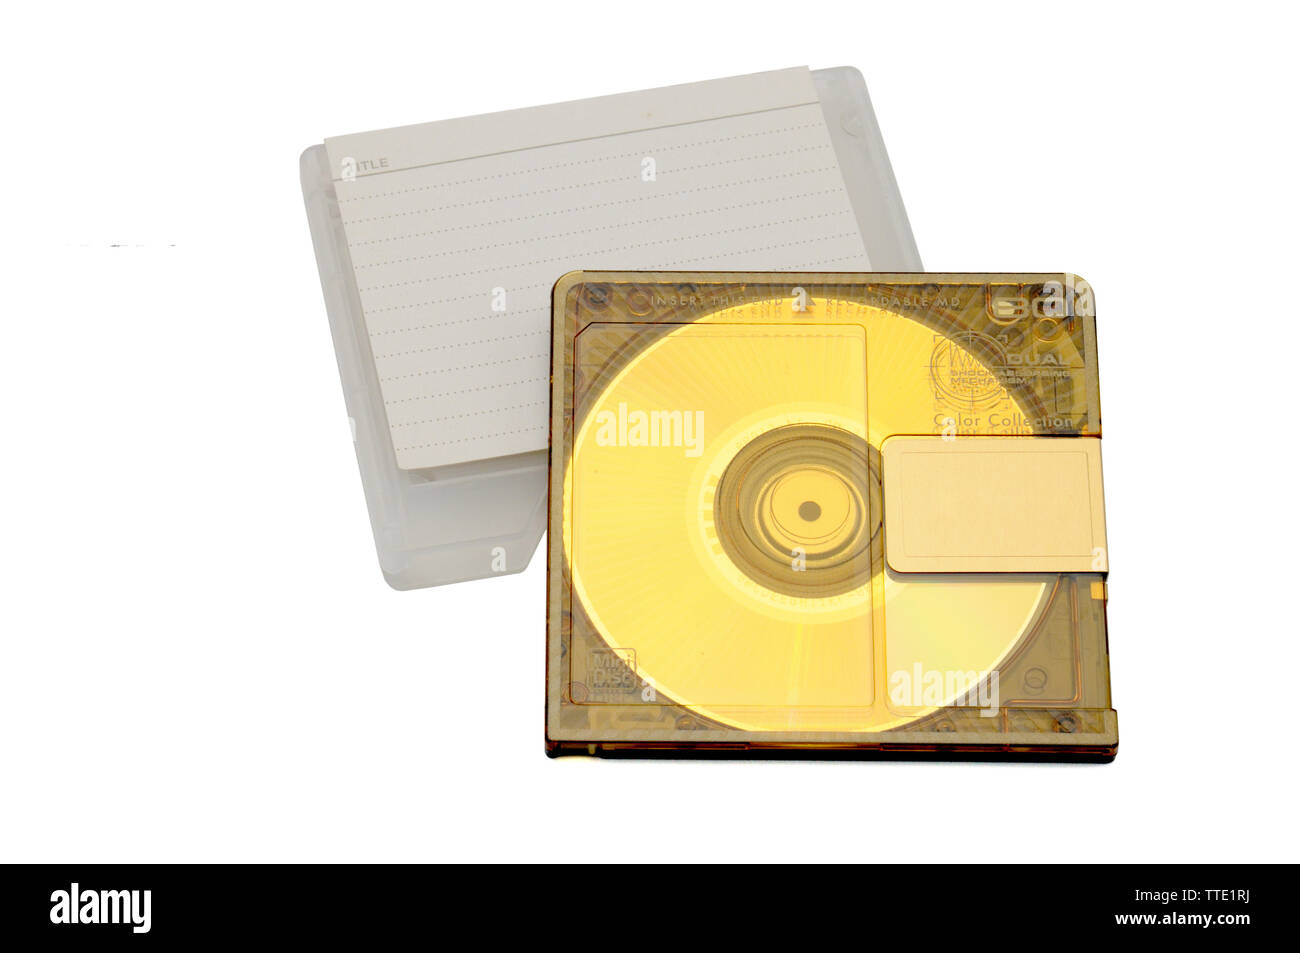 Kompakte wiederbeschreibbare Mini Disc-MD-Recorder für digitale Aufnahmen freigegeben in den 90er Jahren auf einem weißen Hintergrund. Stockfoto